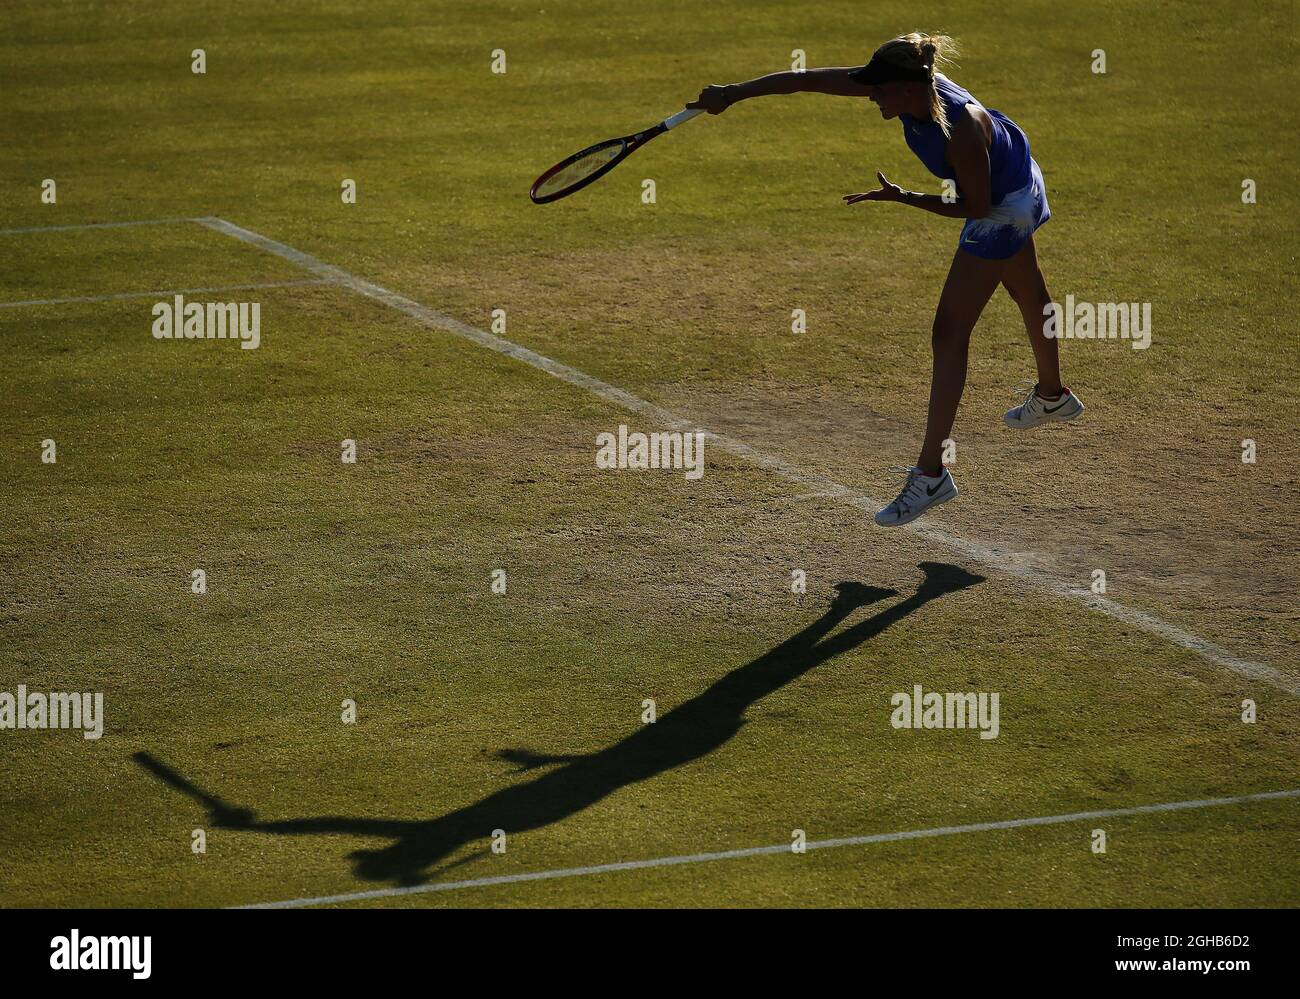 Donna Vekic di Croazia durante il 6° giorno di AEGON Nottingham al Nottingham Tennis Centre. Data foto: 16 giugno 2017. Il credito dovrebbe essere: Matt McNulty/Spaltimage via PA Images Foto Stock